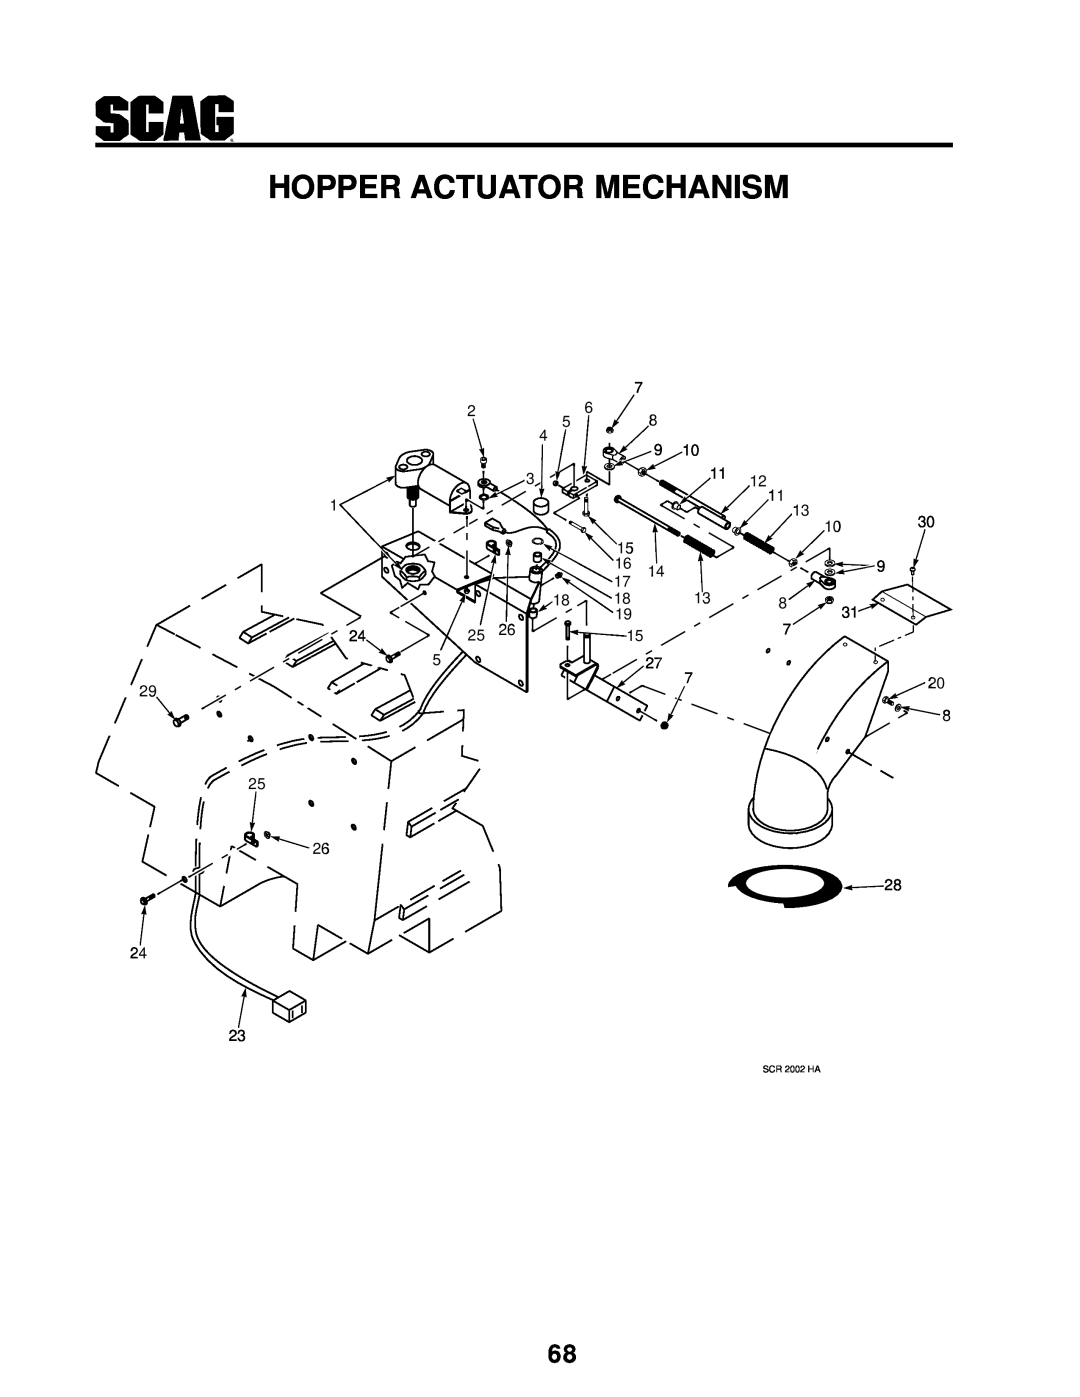 MB QUART manual Hopper Actuator Mechanism, SCR 2002 HA 